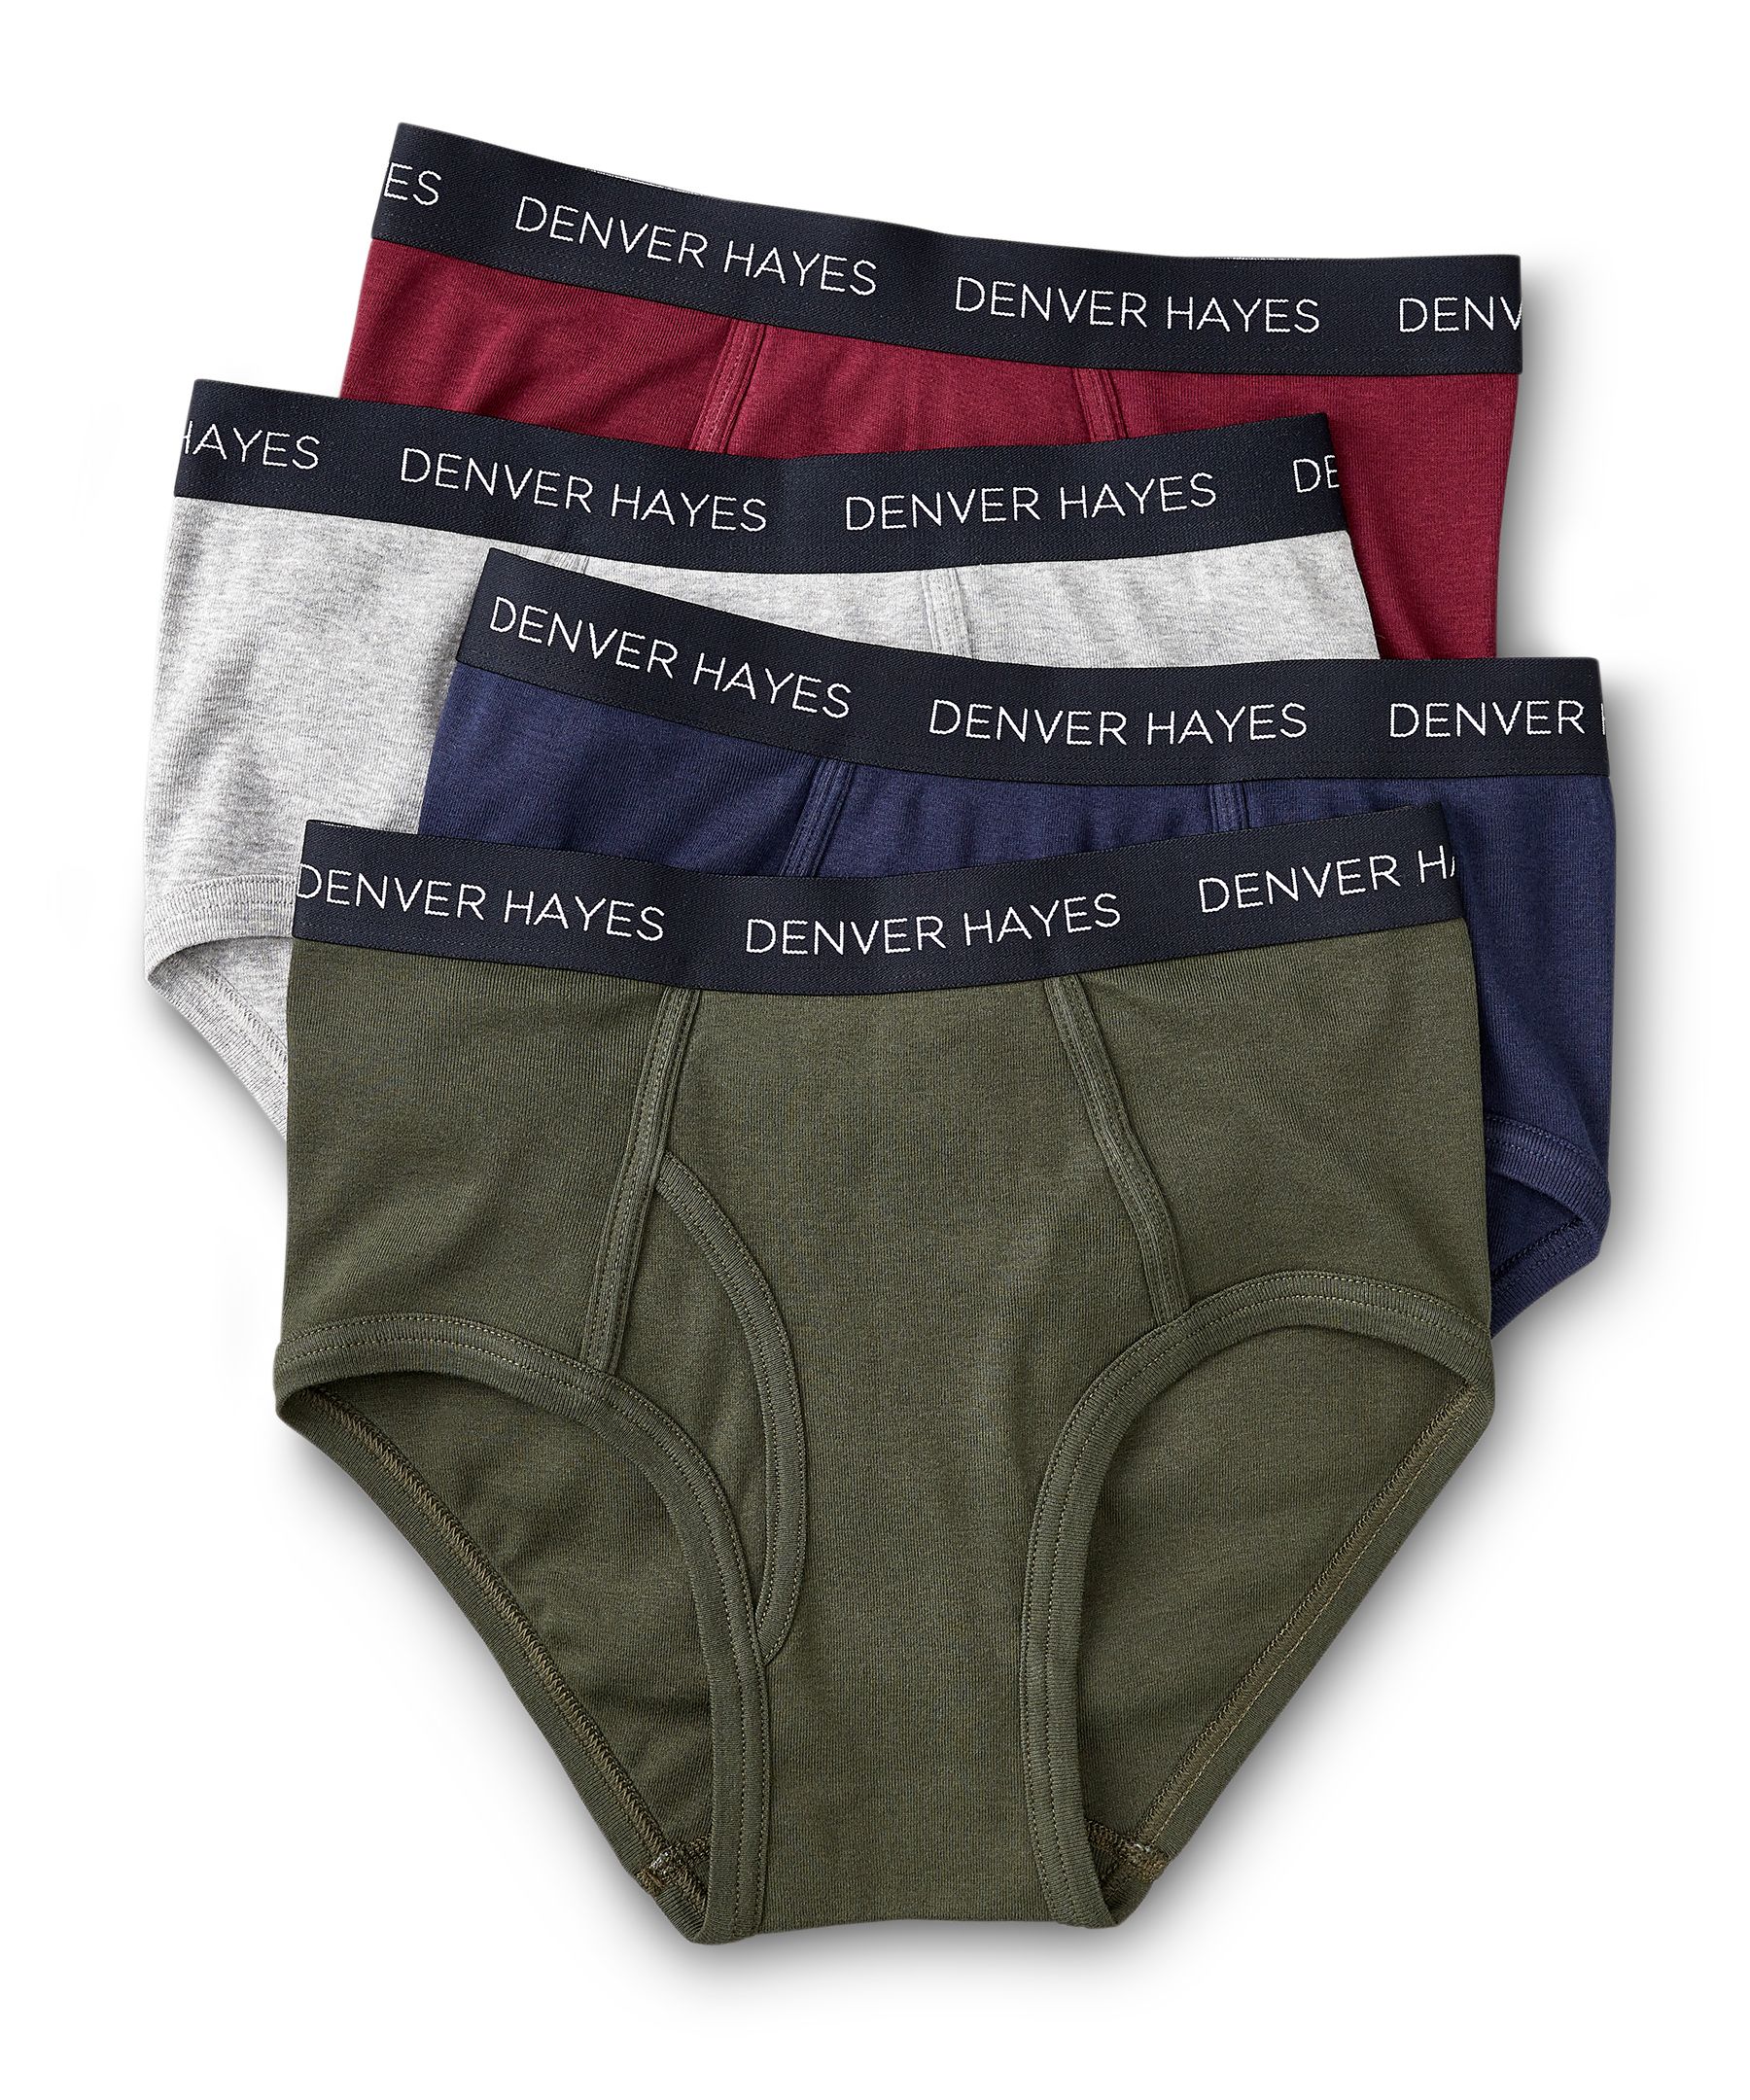 Denver Hayes Men's 4 Pack Classic Boxer Briefs